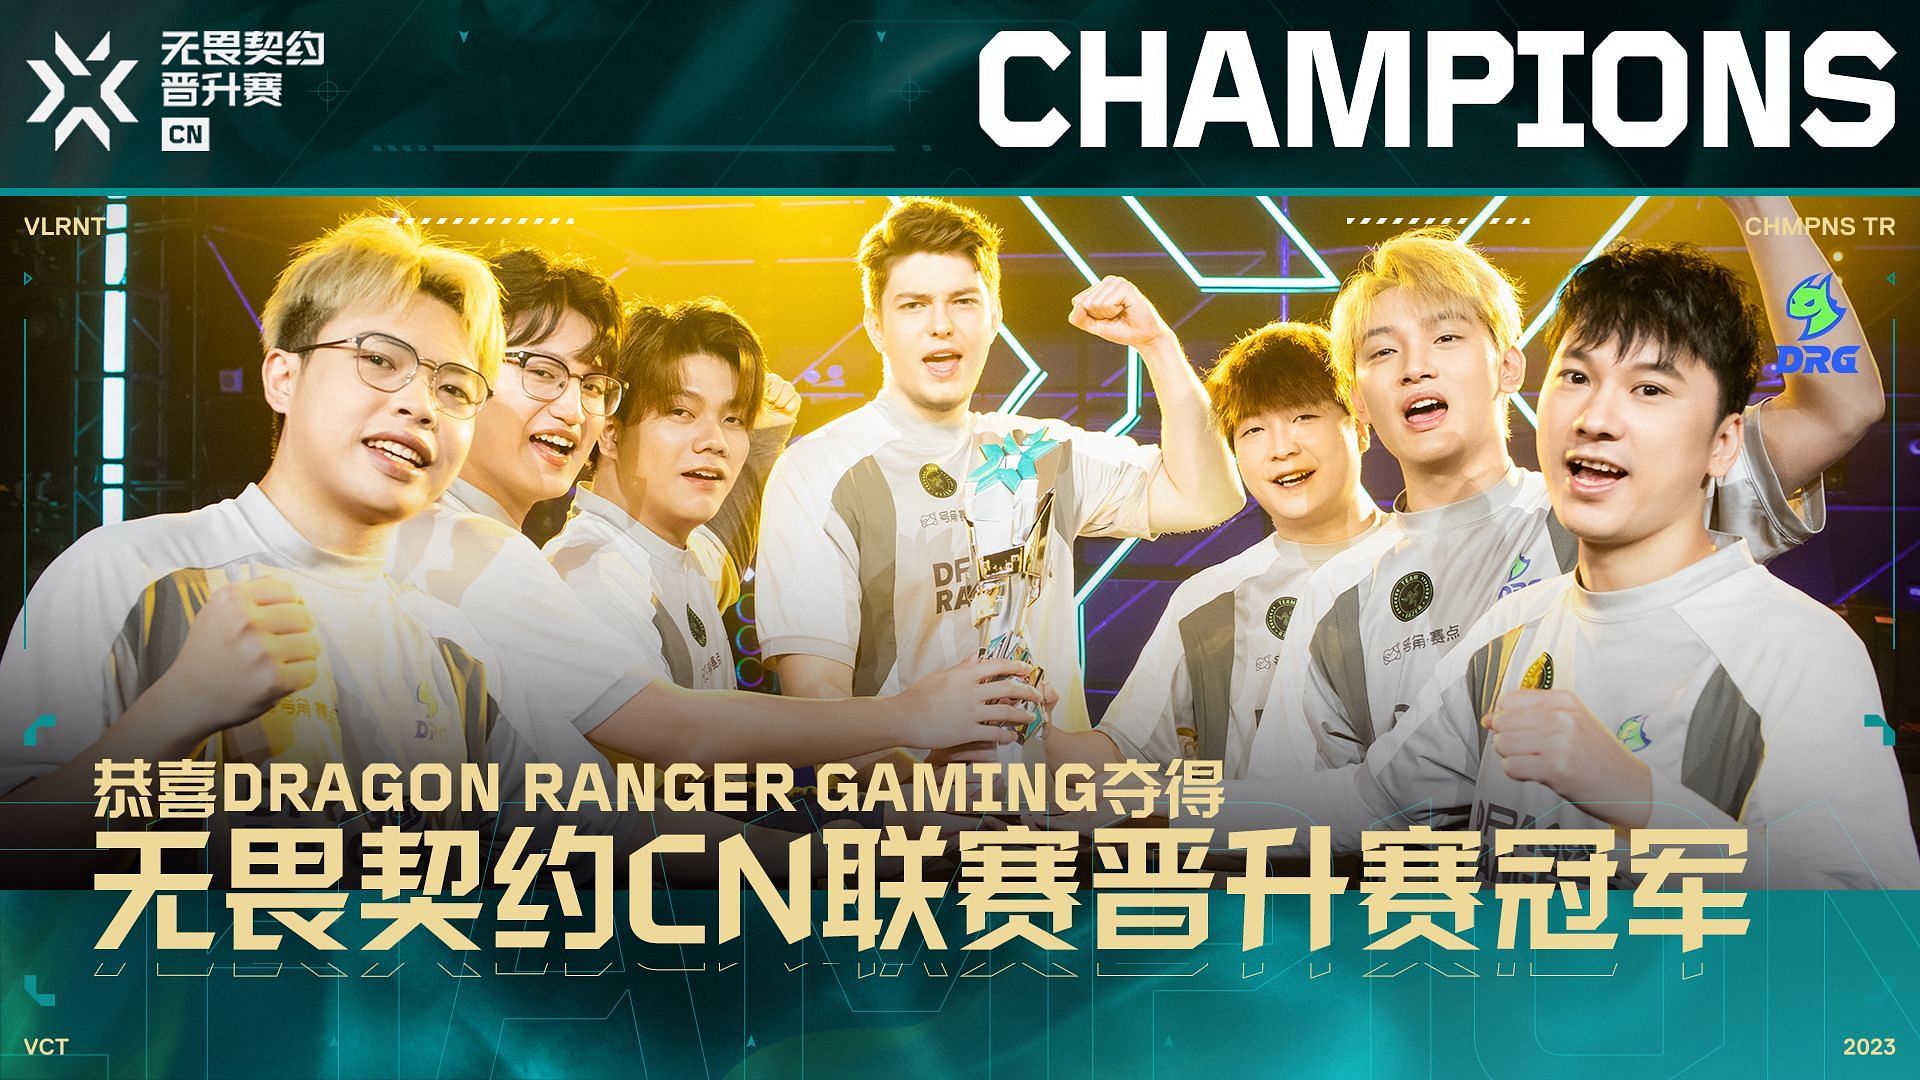 Dragon Ranger Gaming wins VCT China Ascension (Image via Riot Games)